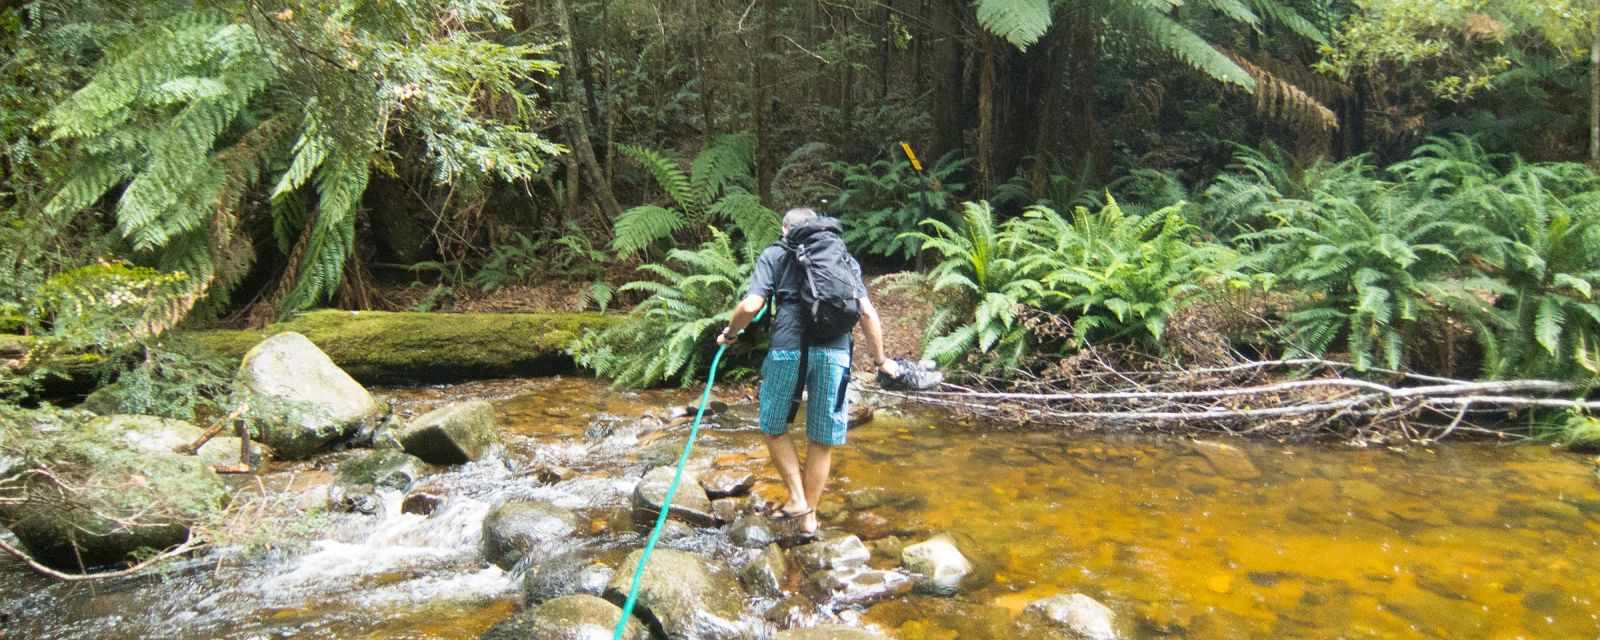 Evercreech Rainforest a Hidden Gem in Tassie